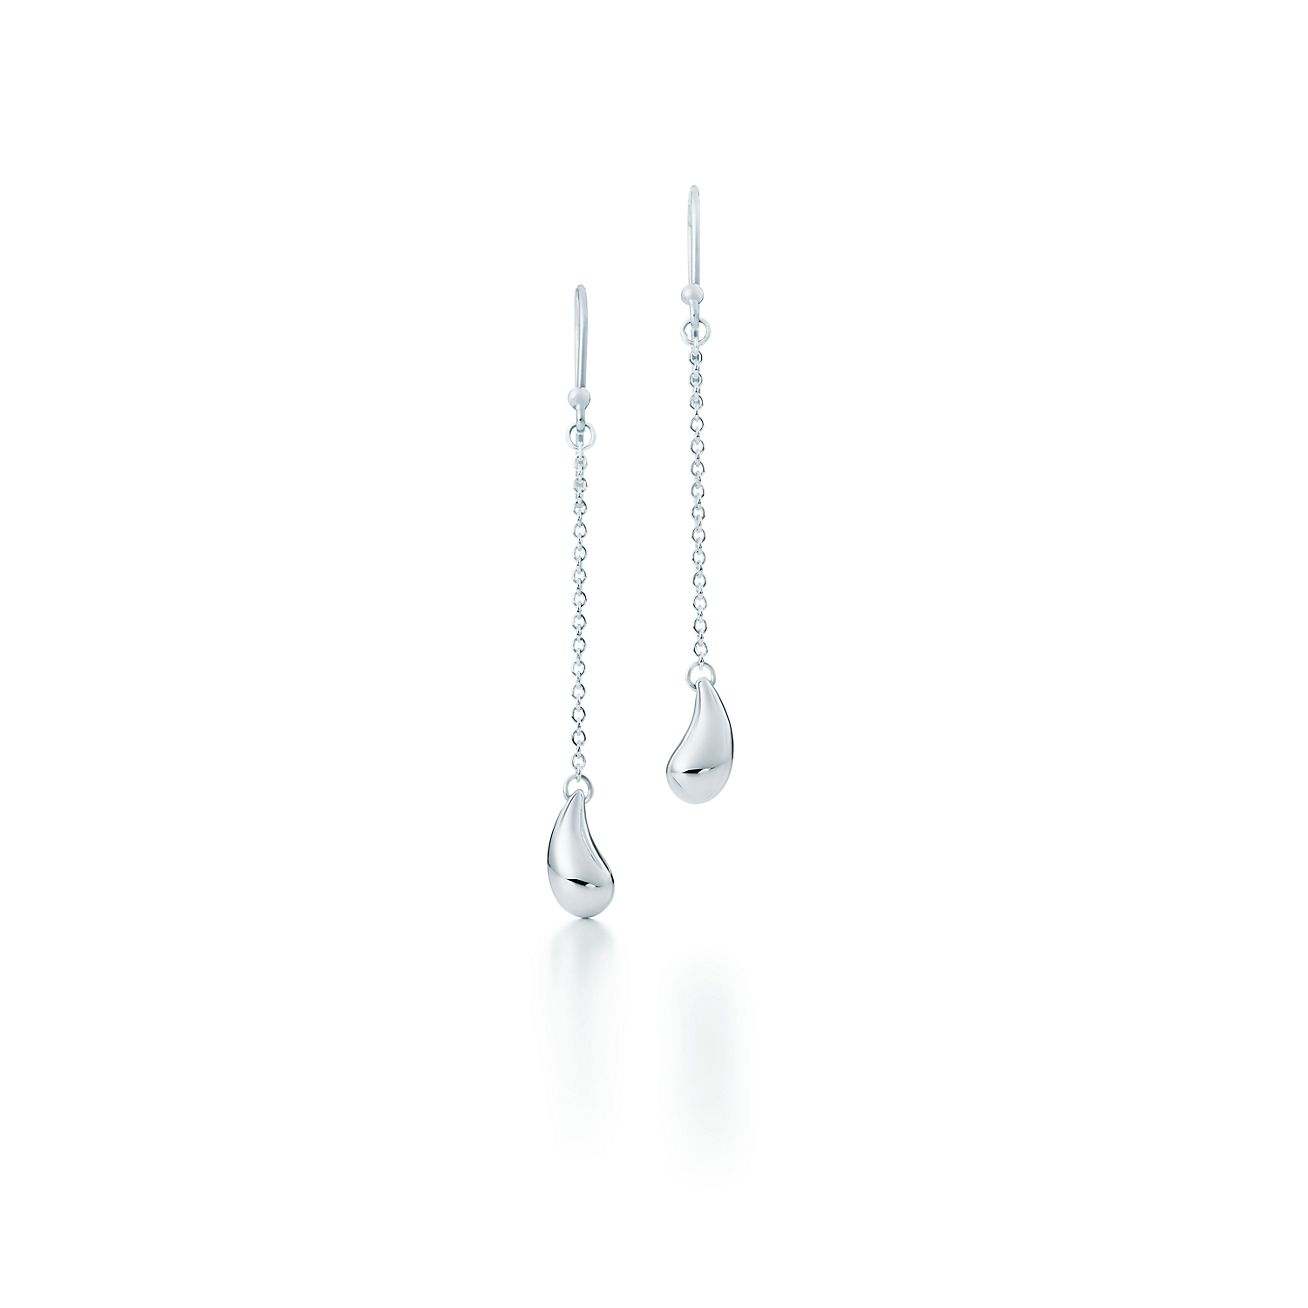 Elsa Peretti® Teardrop earrings in 